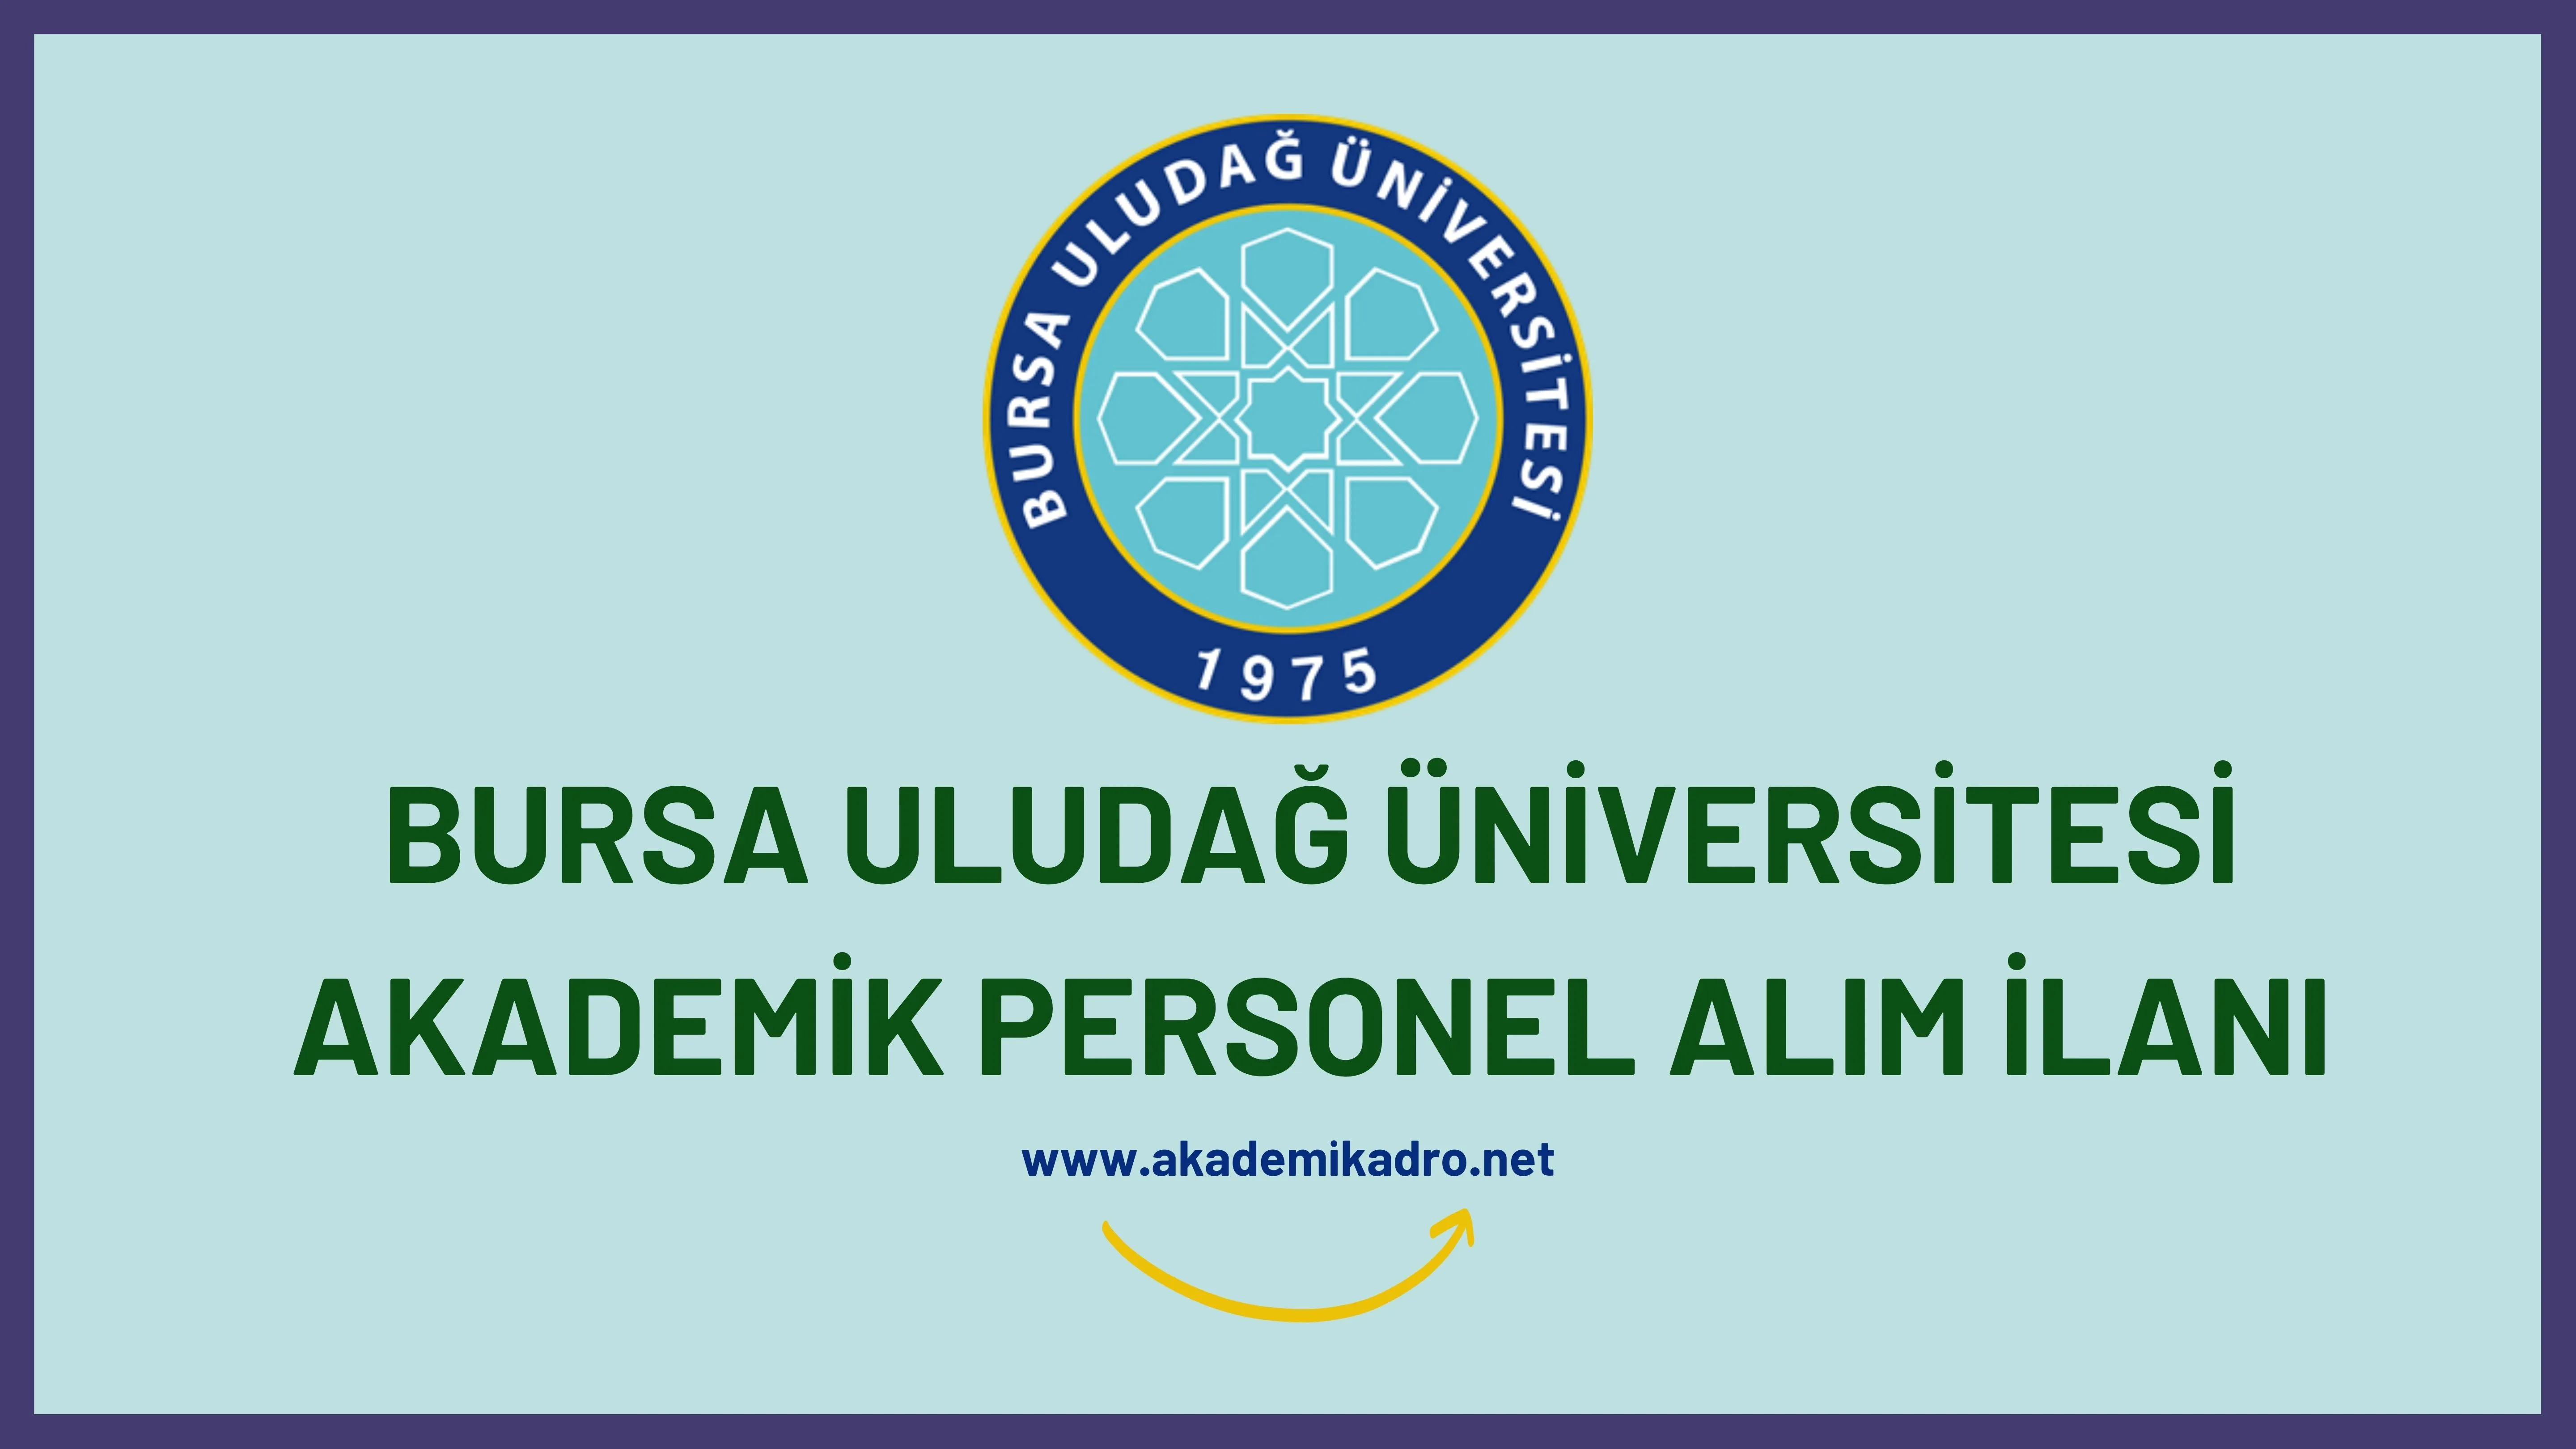 Bursa Uludağ Üniversitesi birçok alandan 78 akademik personel alacak. Son başvuru tarihi 27 Eylül 2022.